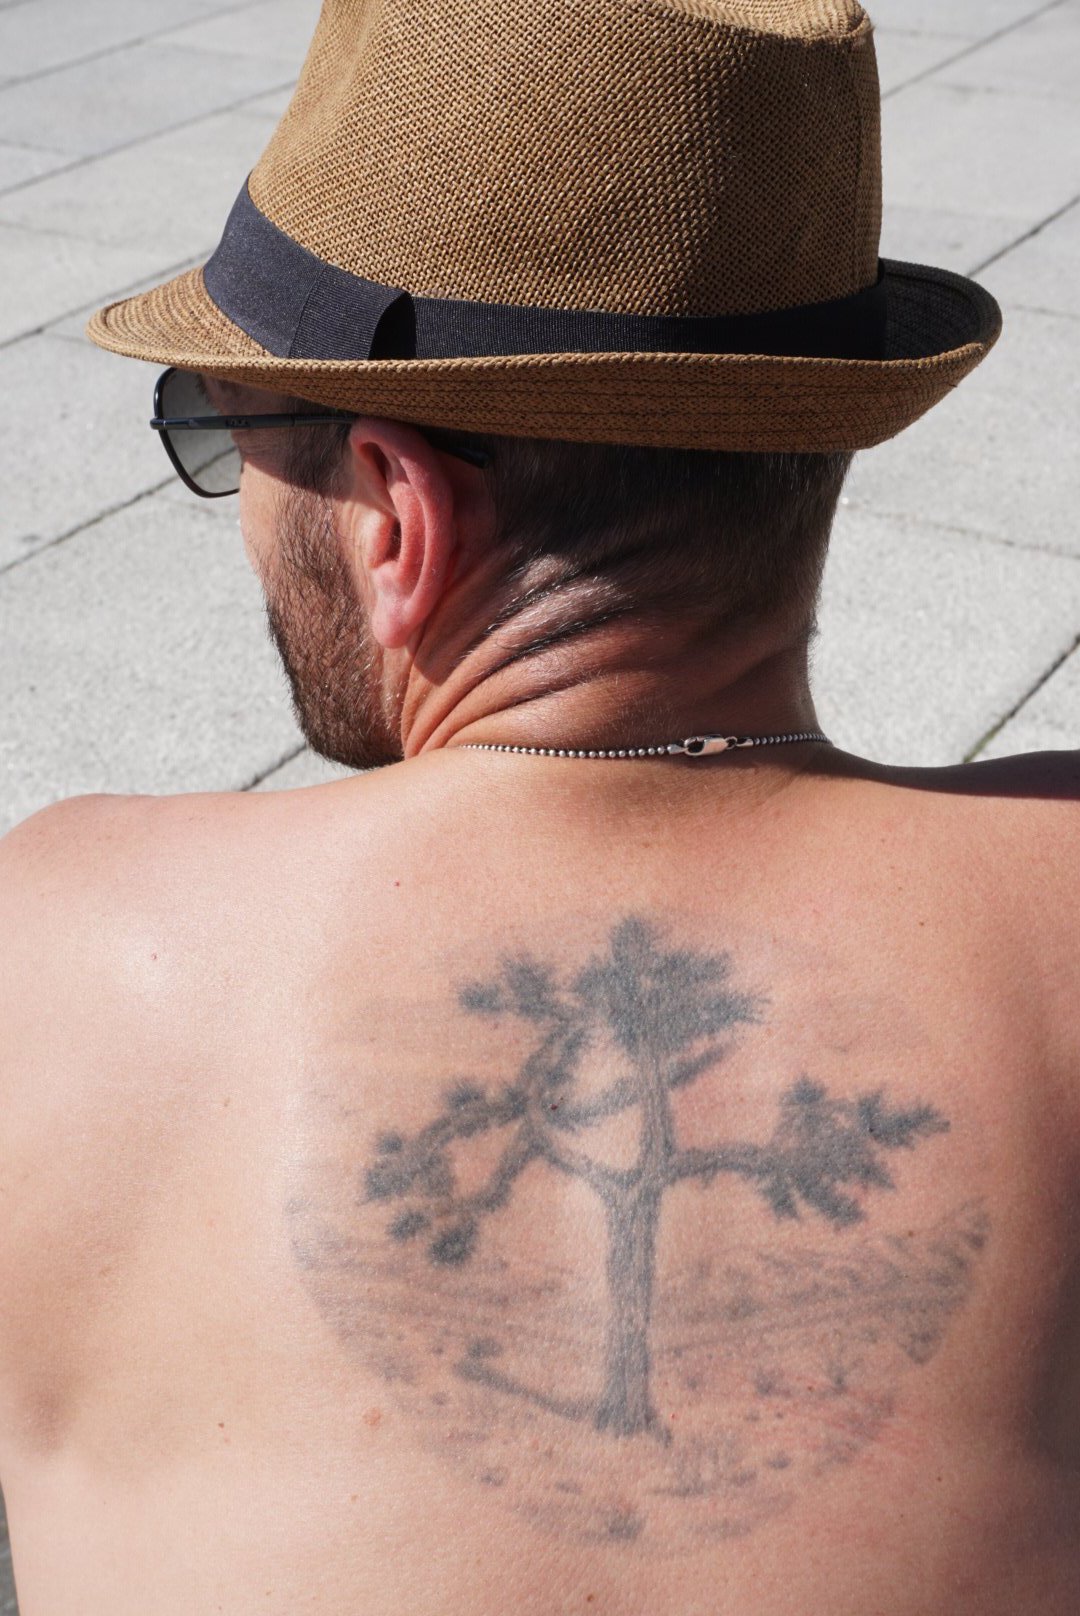 joshua tree tattoo  Tree tattoo meaning Tree tattoo designs Tree line  tattoo